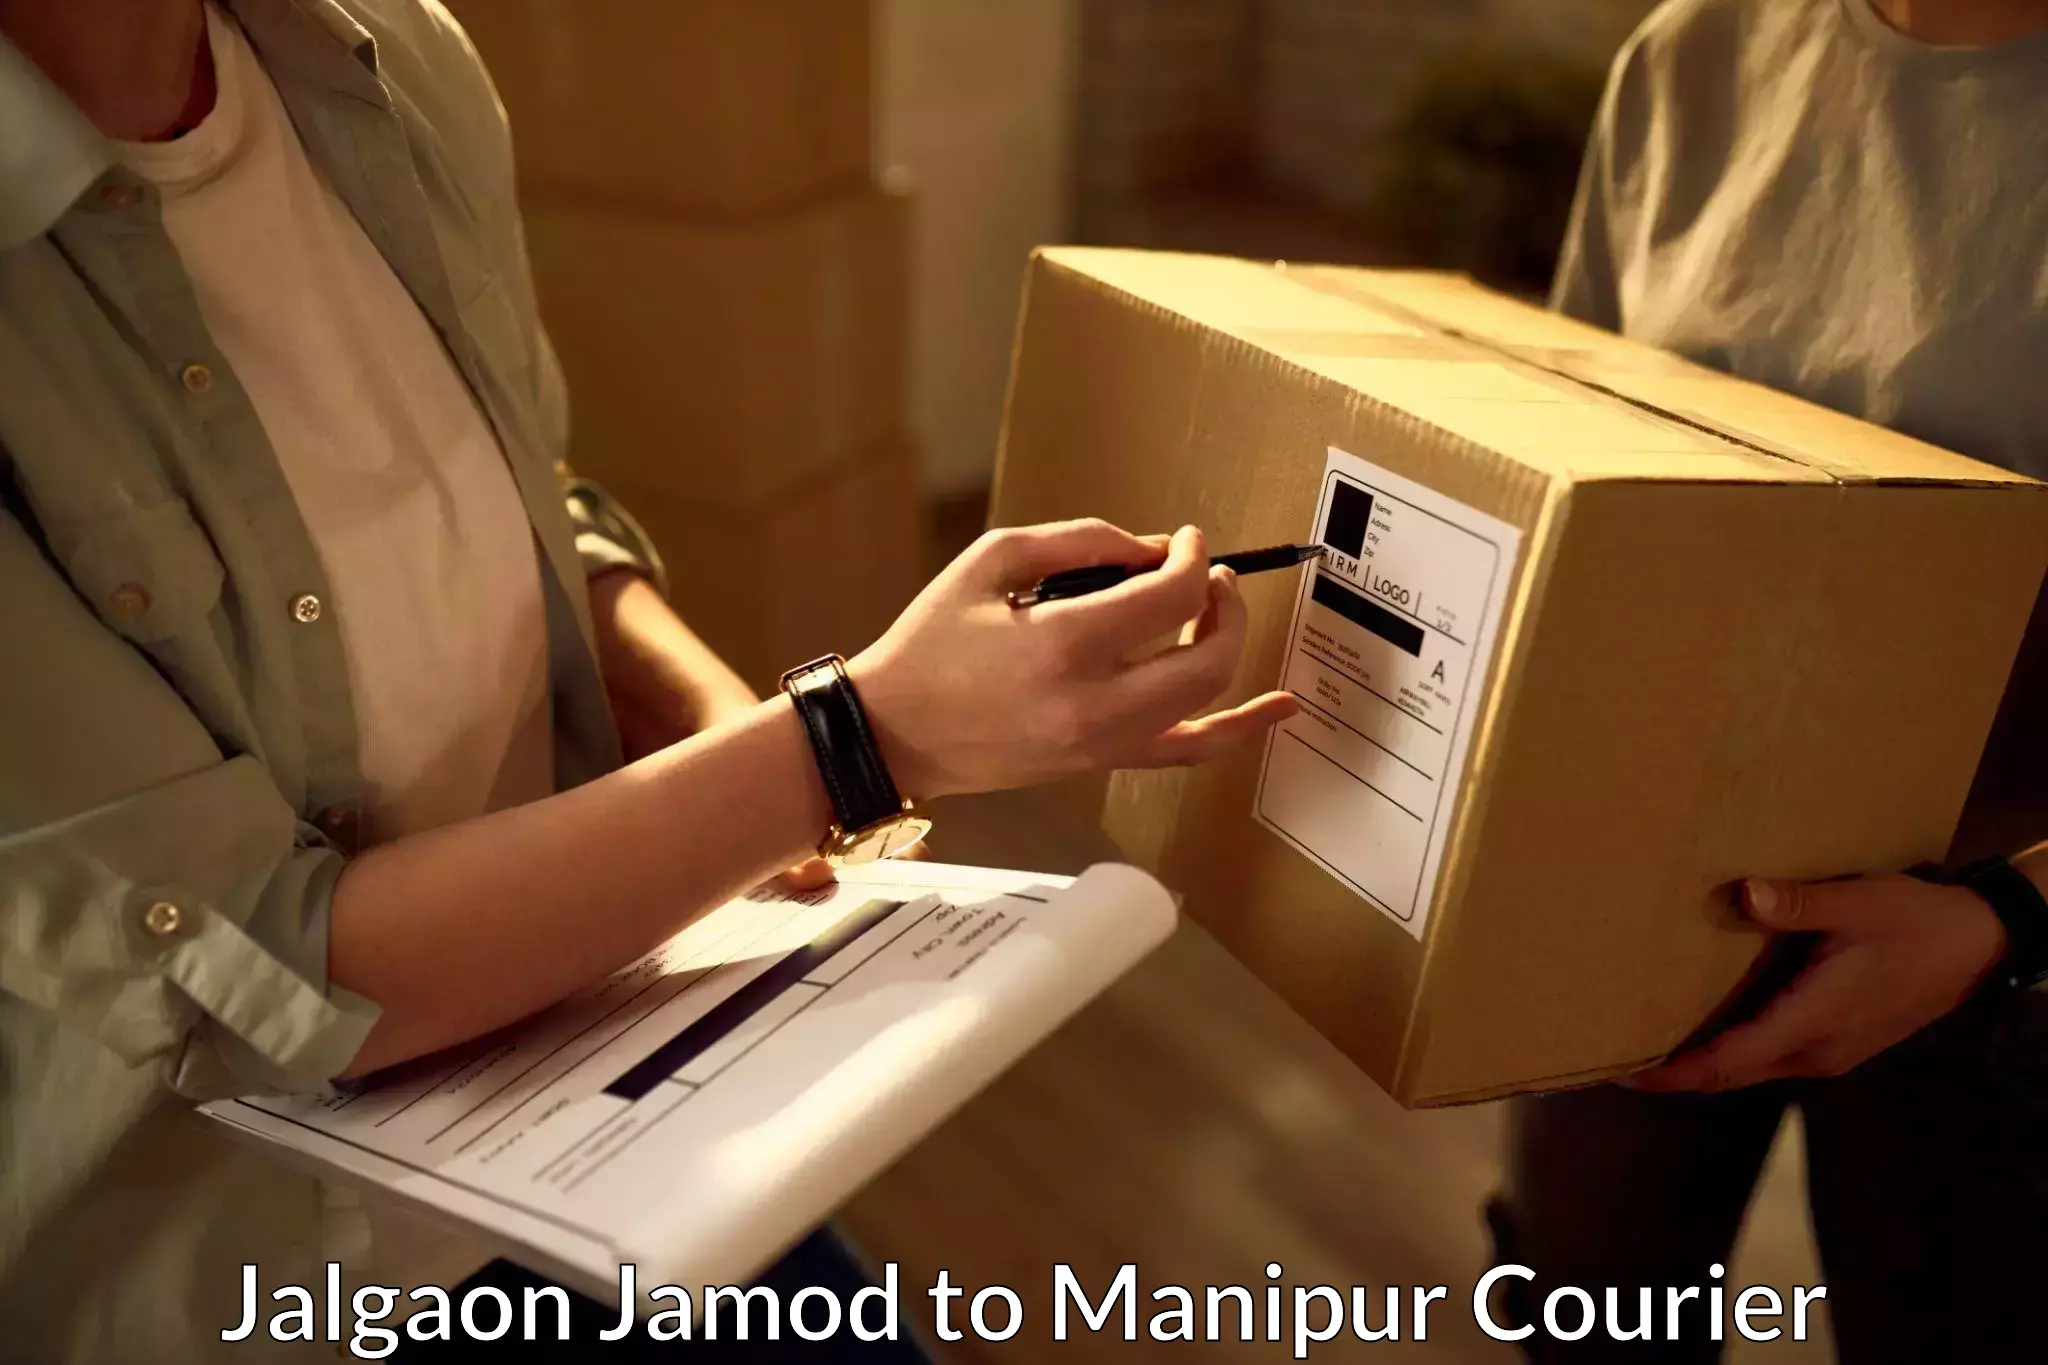 Express delivery network Jalgaon Jamod to Jiribam